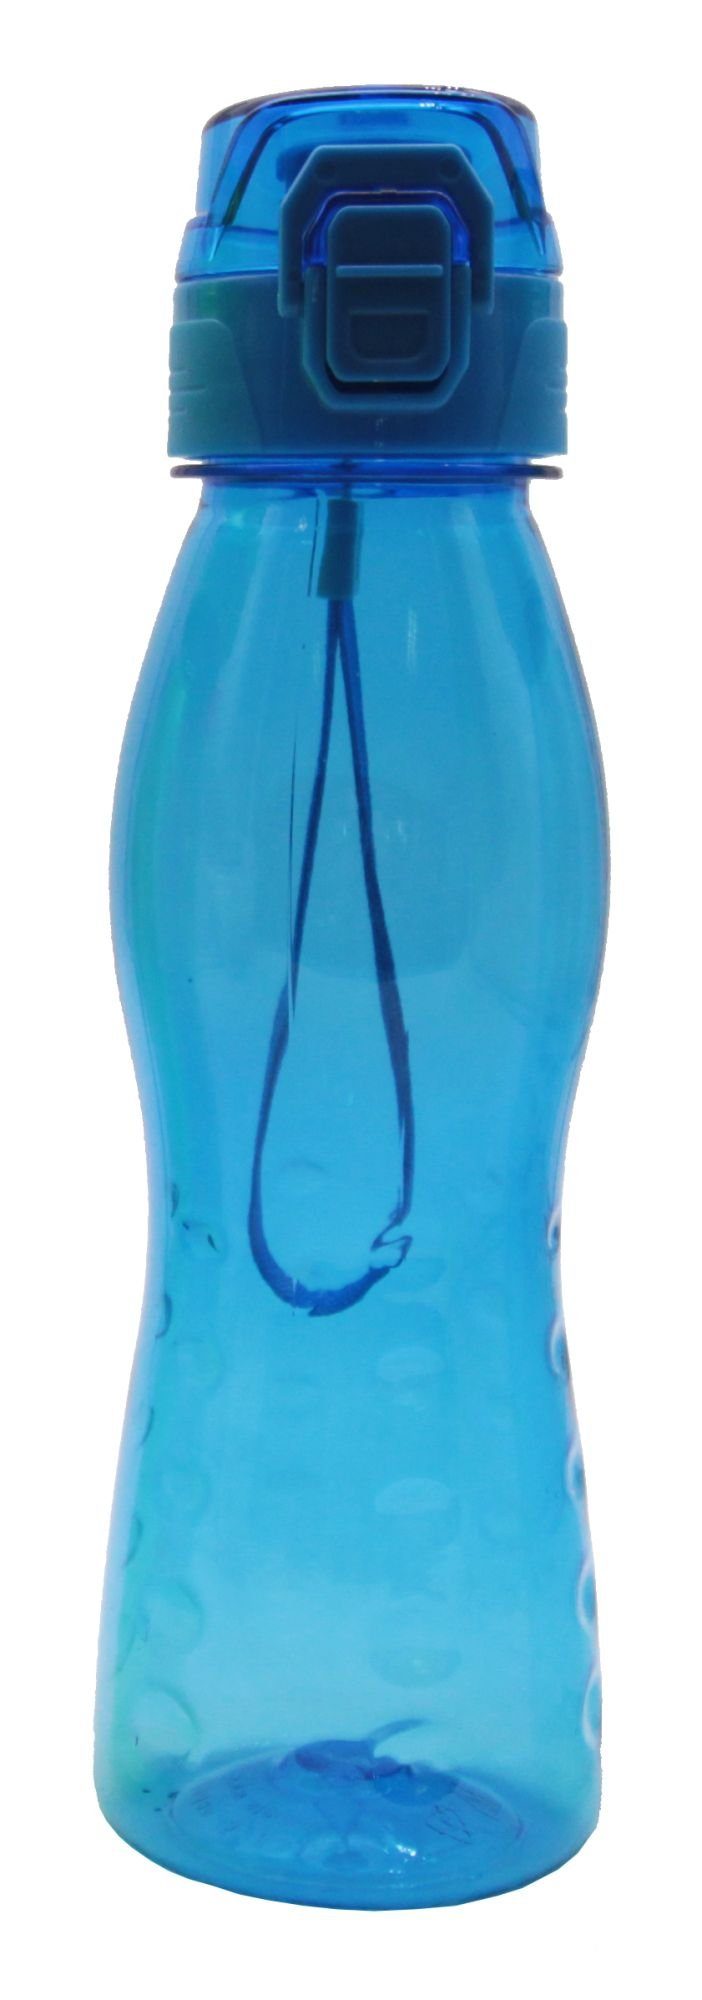 Steuber Trinkflasche, Klick Freizeit PREMIUM-Blau Premium Trinkflasche, ml Top 700